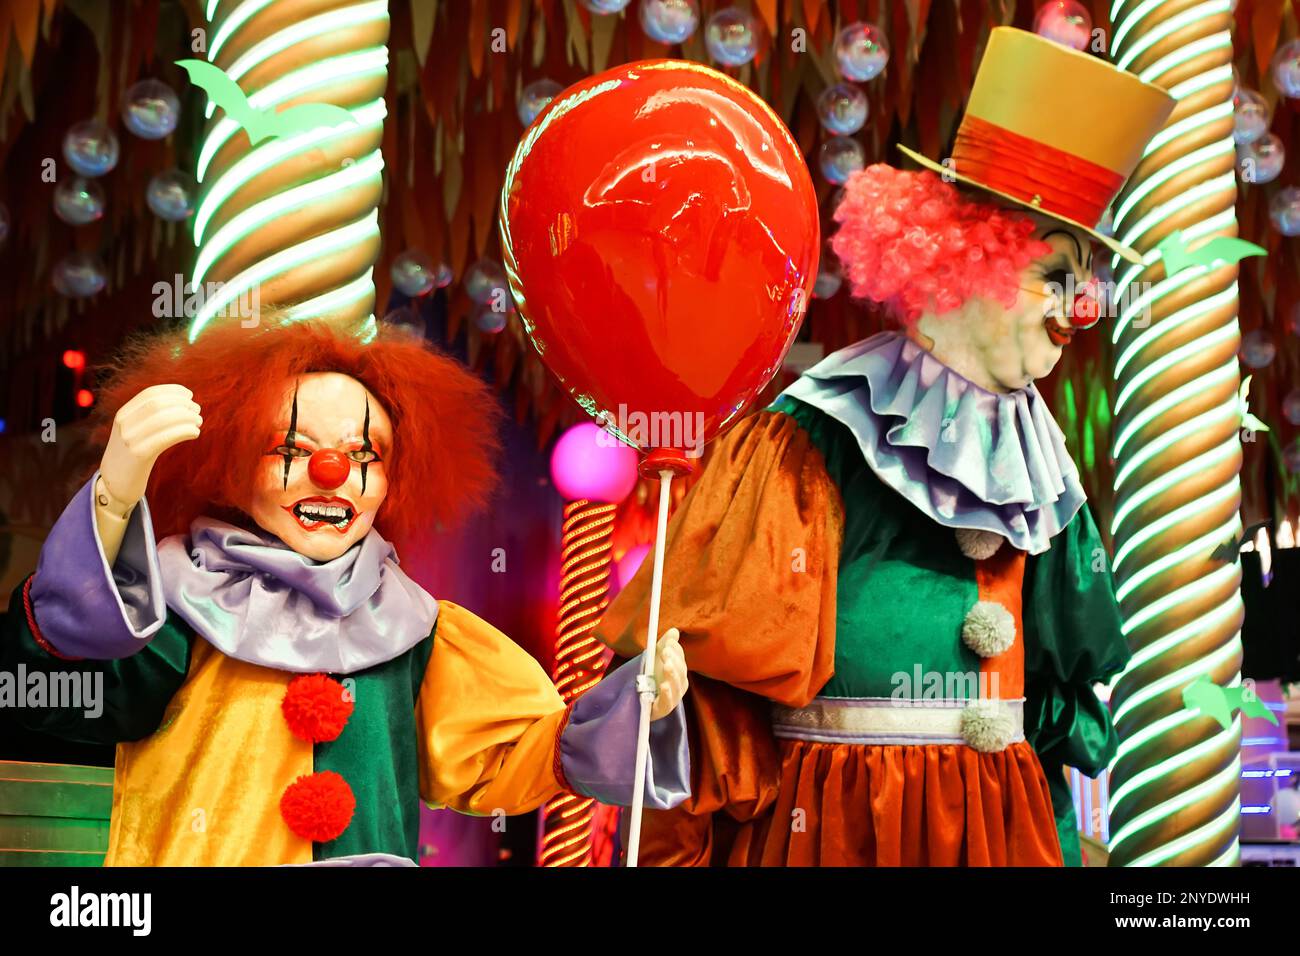 Zwei Clown-Puppen jagen Passanten Angst ein. Halloween. Hochwertiges Foto Stockfoto